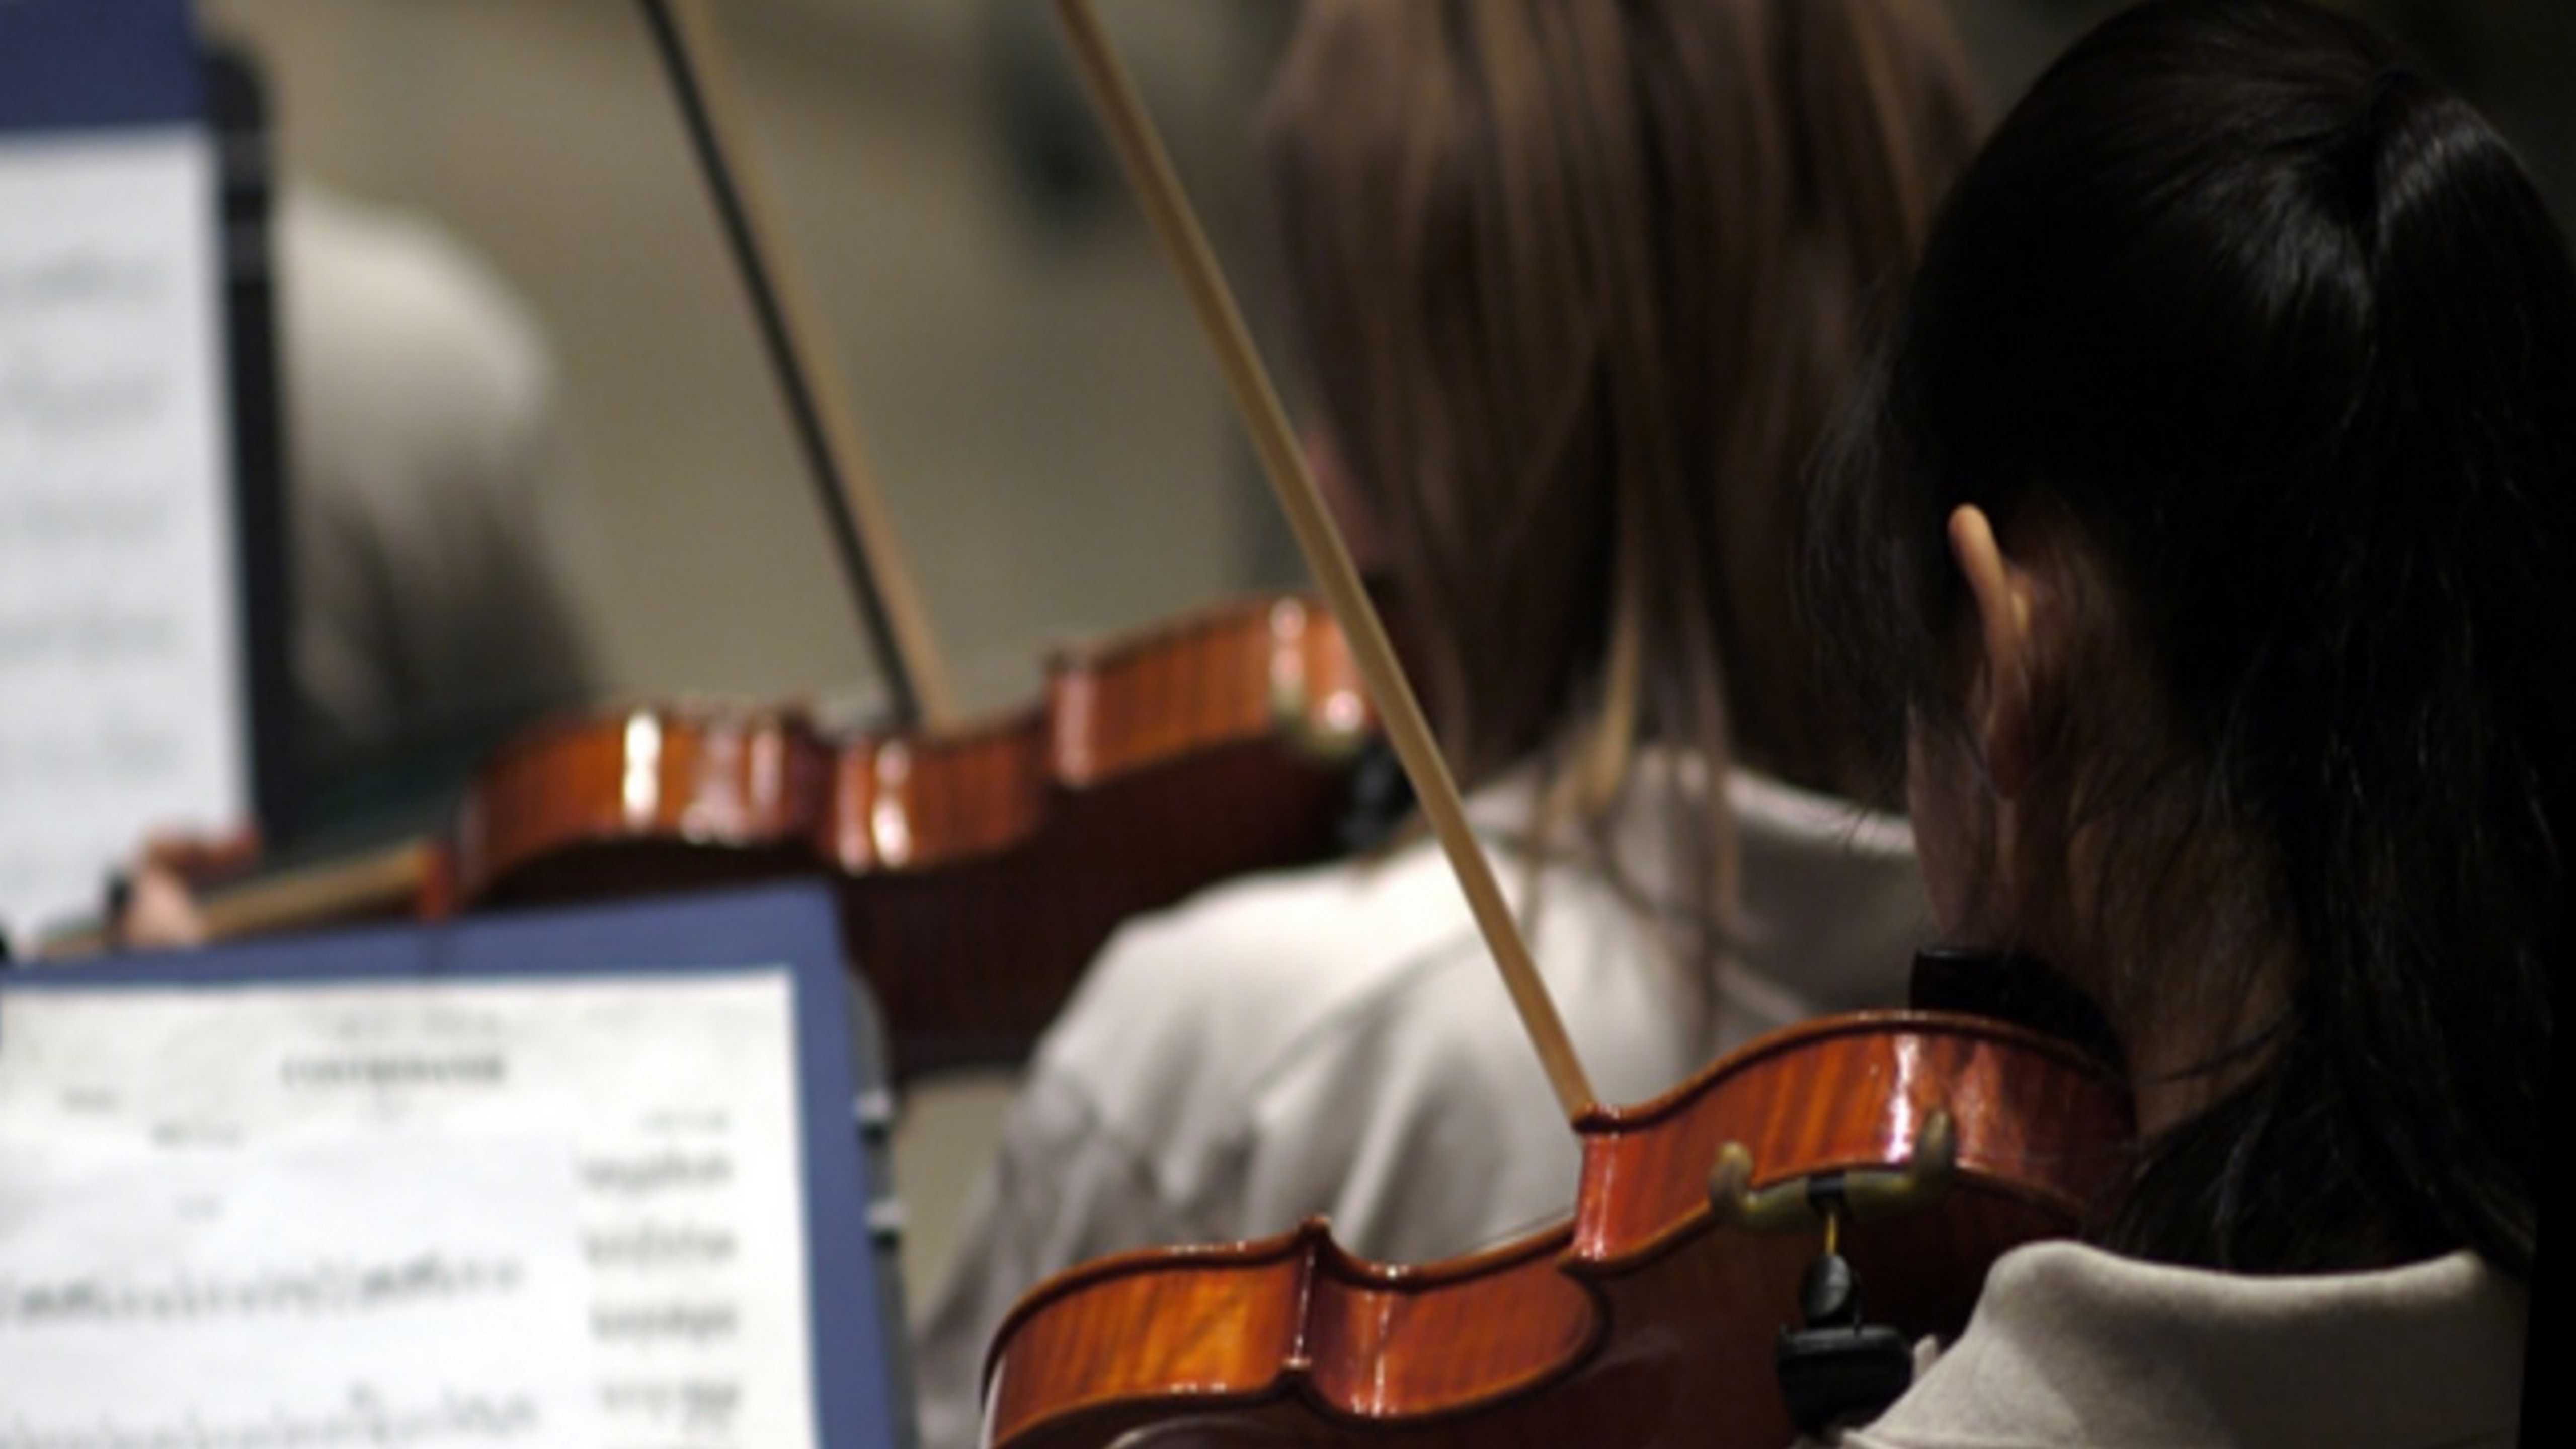 Bordeaux accueille le 46e Forum Européen des écoles de musique